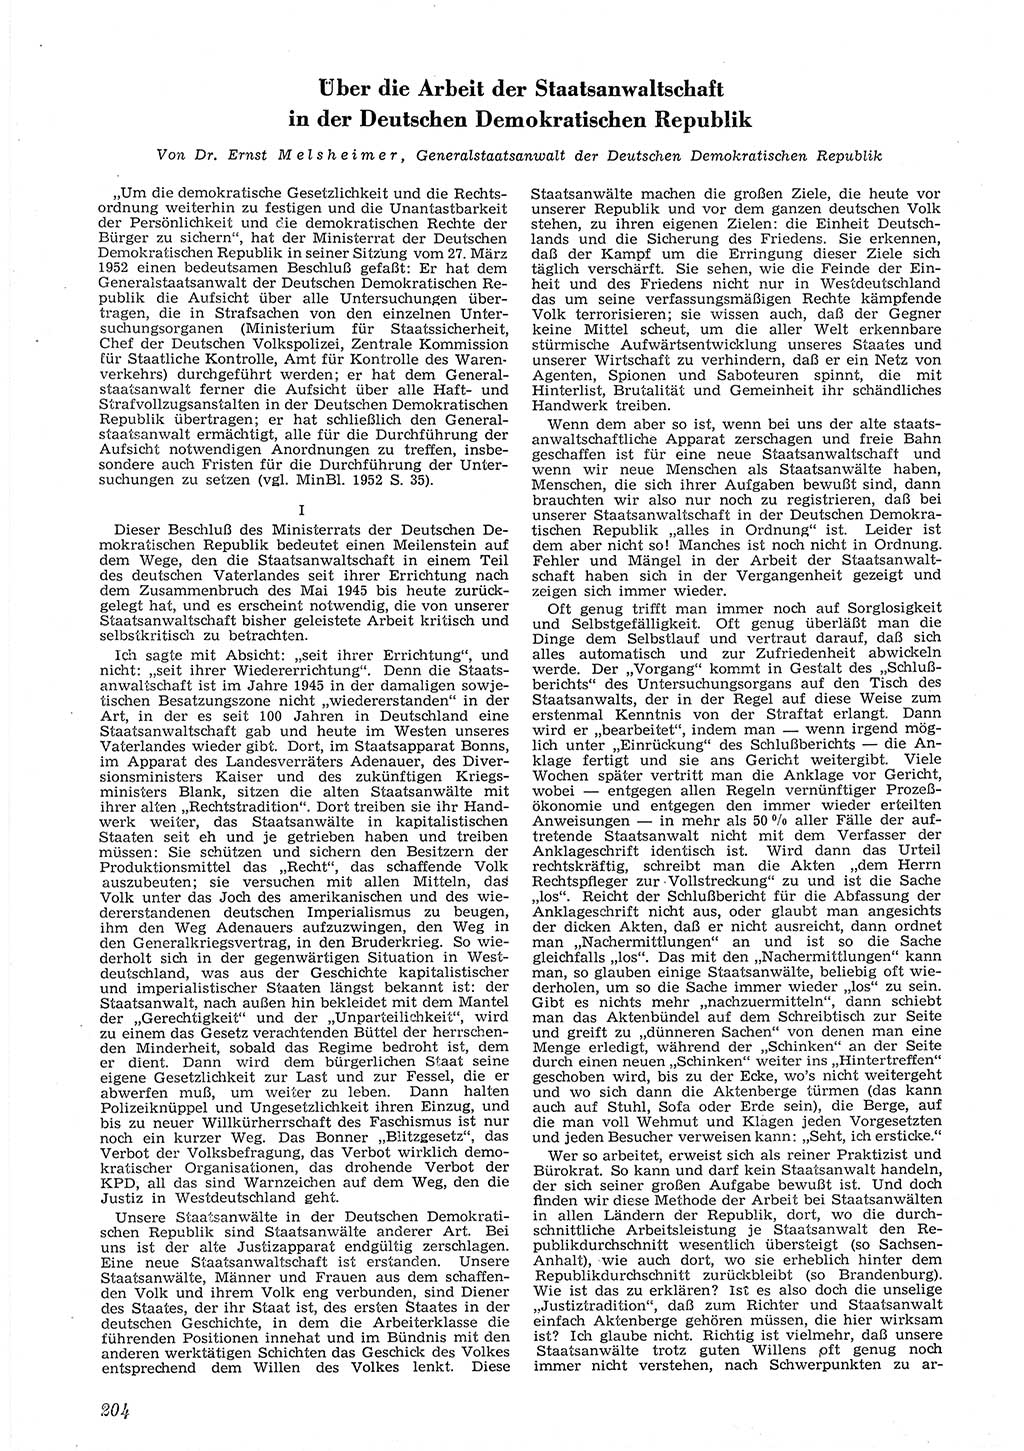 Neue Justiz (NJ), Zeitschrift für Recht und Rechtswissenschaft [Deutsche Demokratische Republik (DDR)], 6. Jahrgang 1952, Seite 204 (NJ DDR 1952, S. 204)